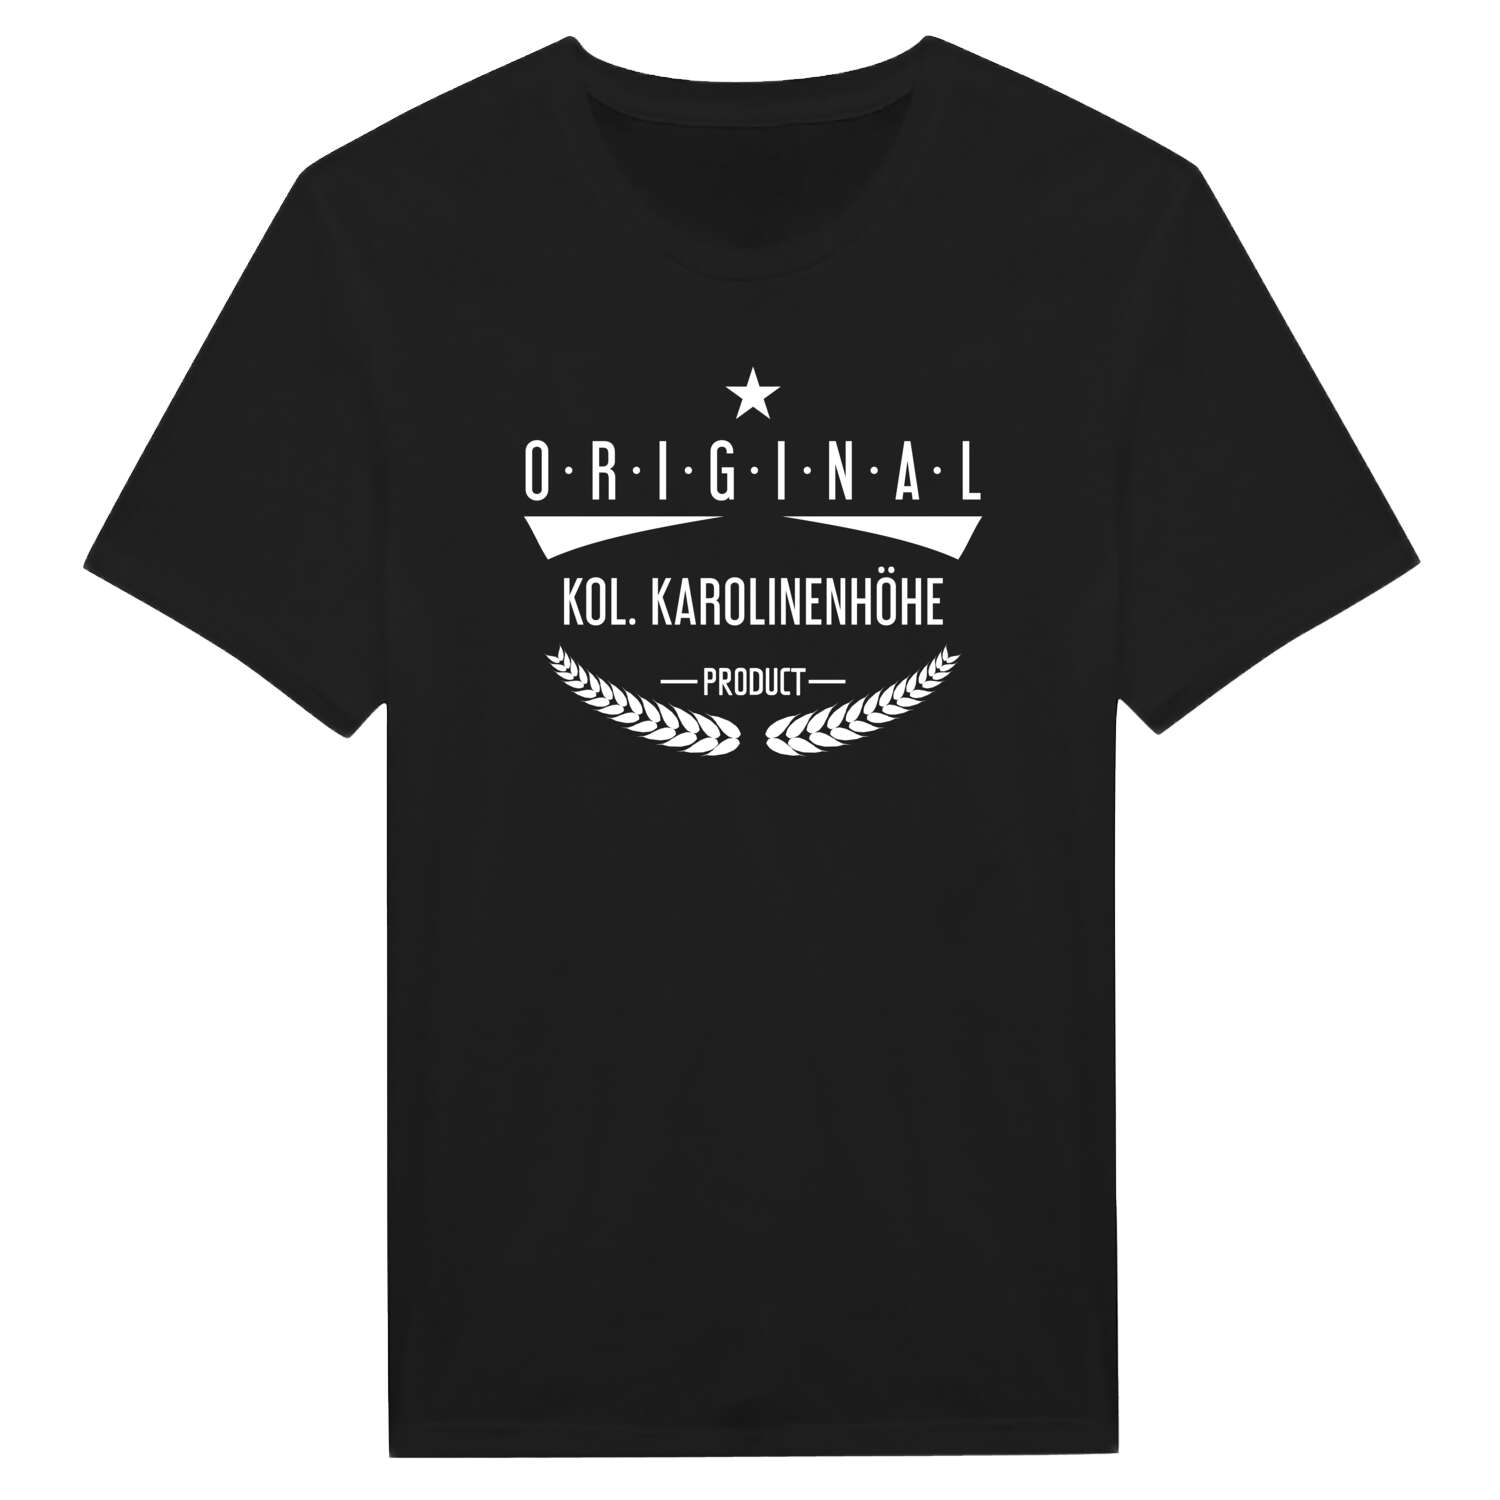 Kol. Karolinenhöhe T-Shirt »Original Product«